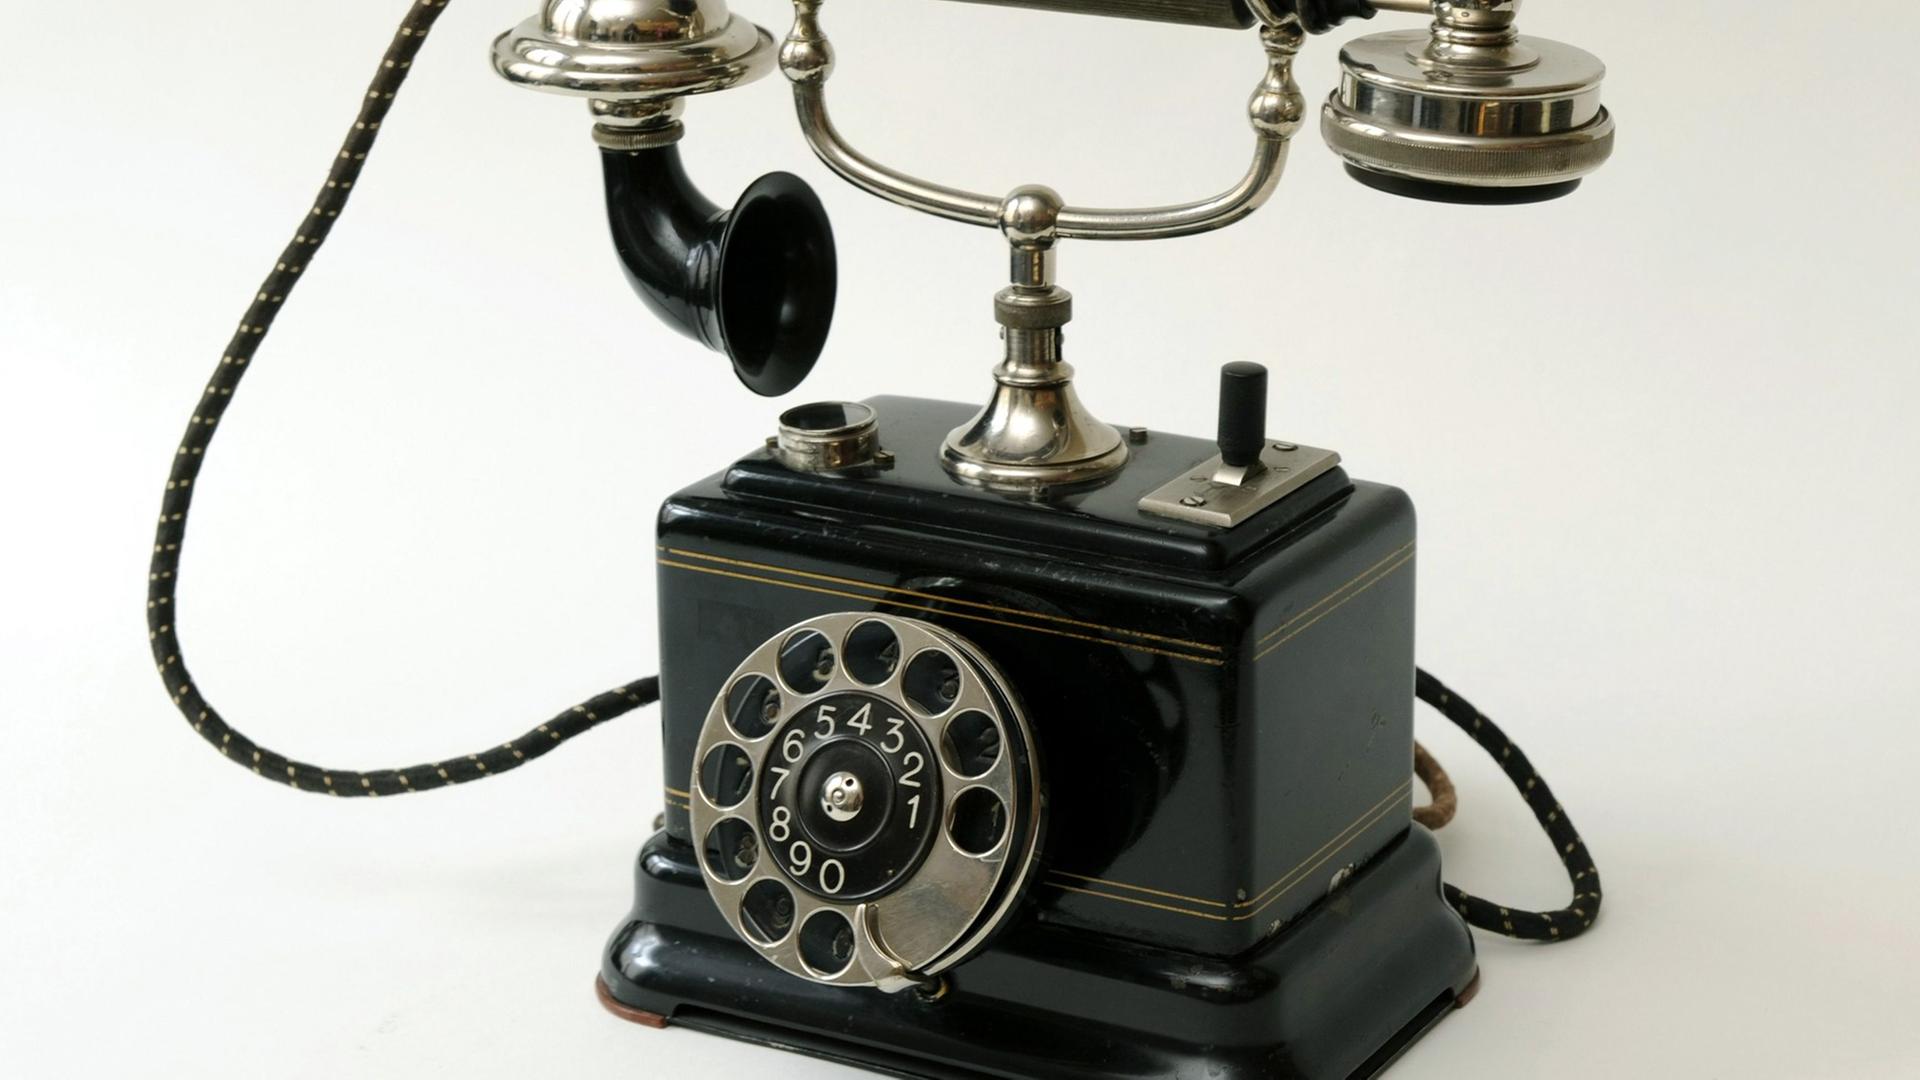 Ein historisches Telefon mit Wählscheibe. Foto: LEHTIKUVA / Pekka Sakki +++(c) dpa - Report+++